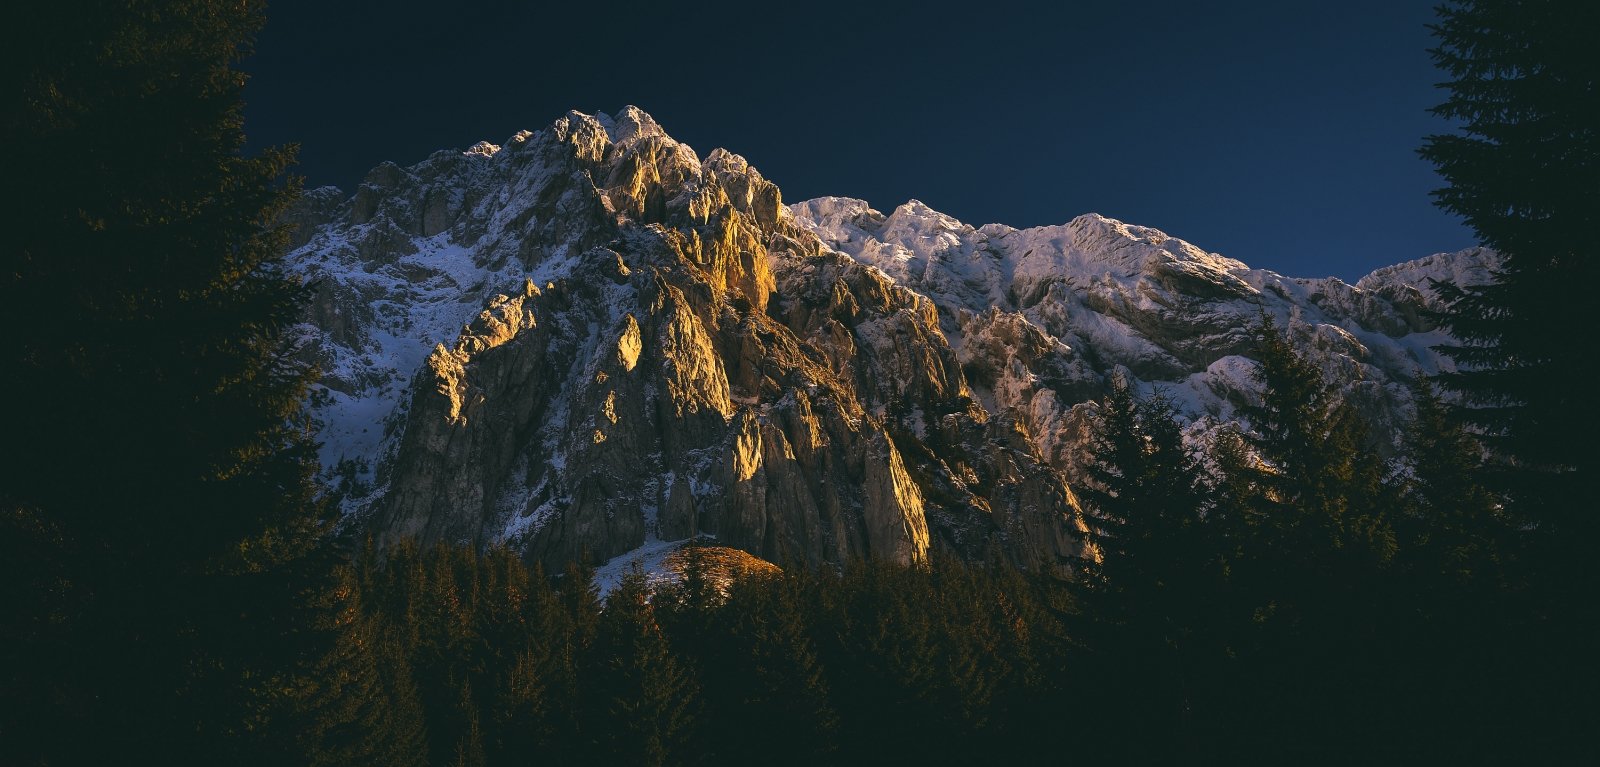 Sony RX1, landscape, mountain,winter, Claudiu Paduroiu